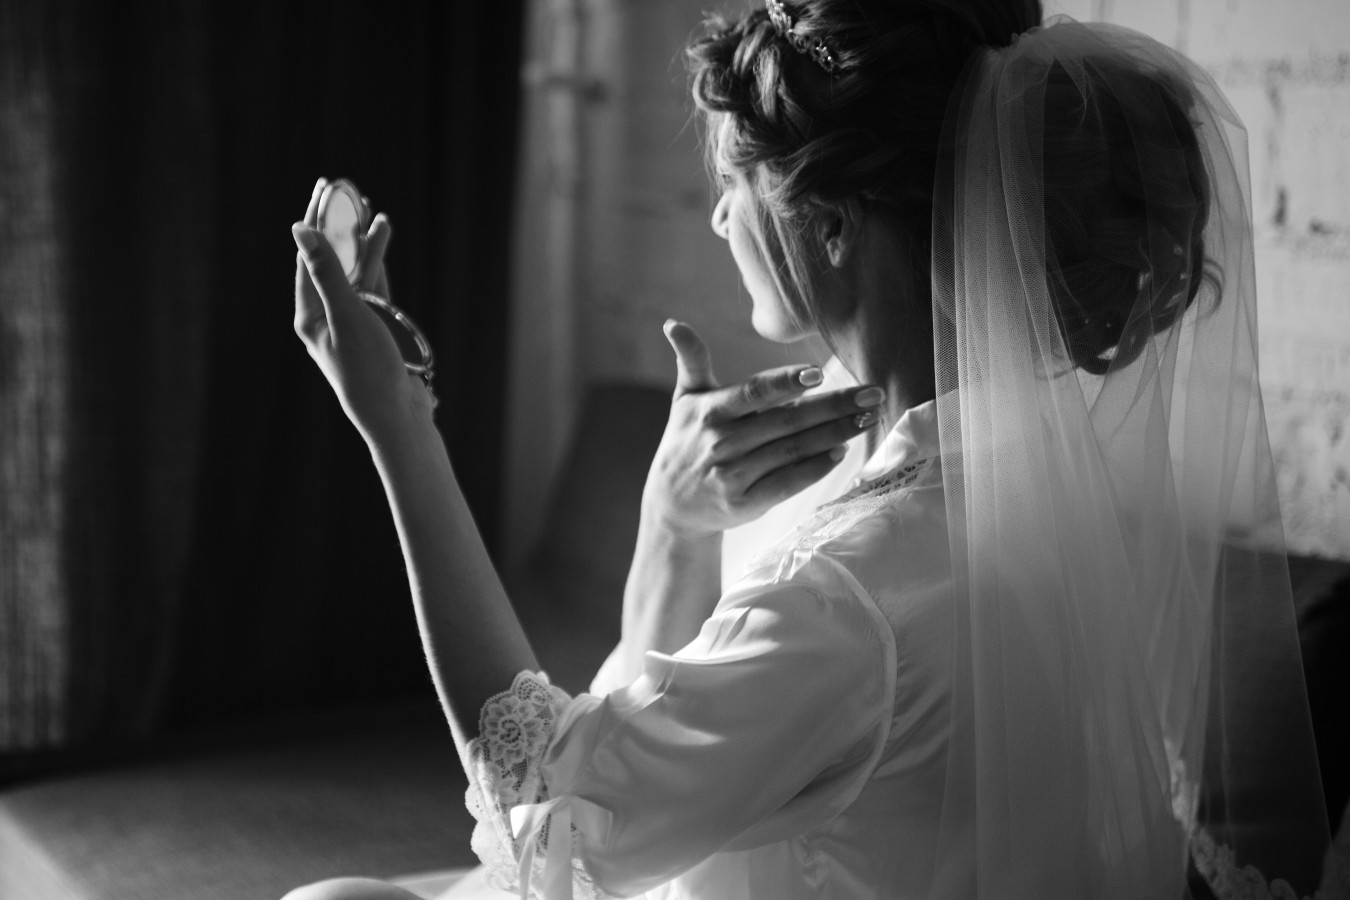 fotograf warszawa oleksandr-kozmenko portfolio zdjecia slubne inspiracje wesele plener slubny sesja slubna